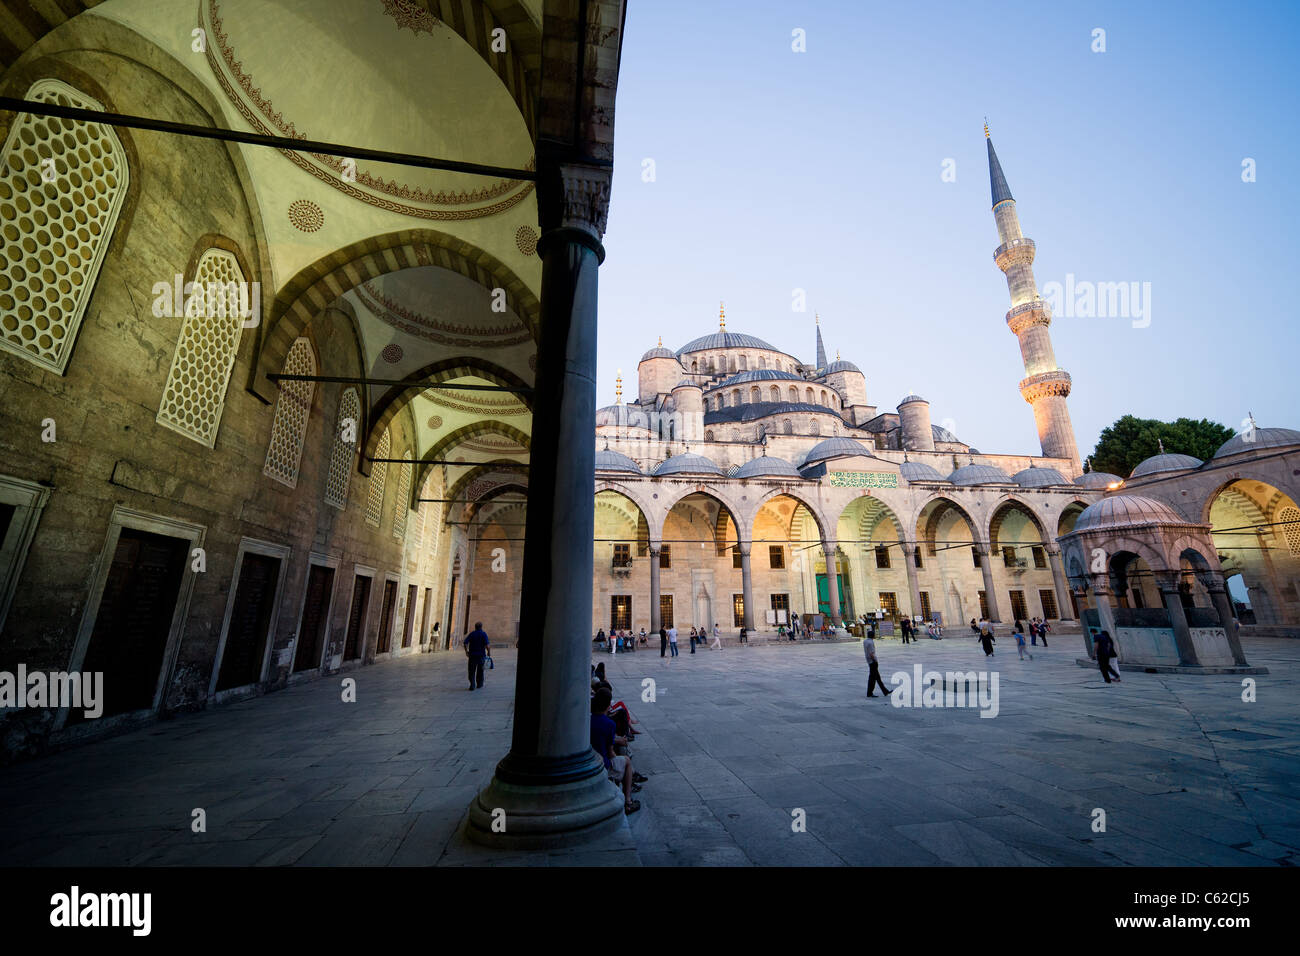 La Moschea Blu (Sultan Ahmet Camii) punto di riferimento storico al tramonto, ottomani e bizantini stile architettonico ad Istanbul in Turchia. Foto Stock